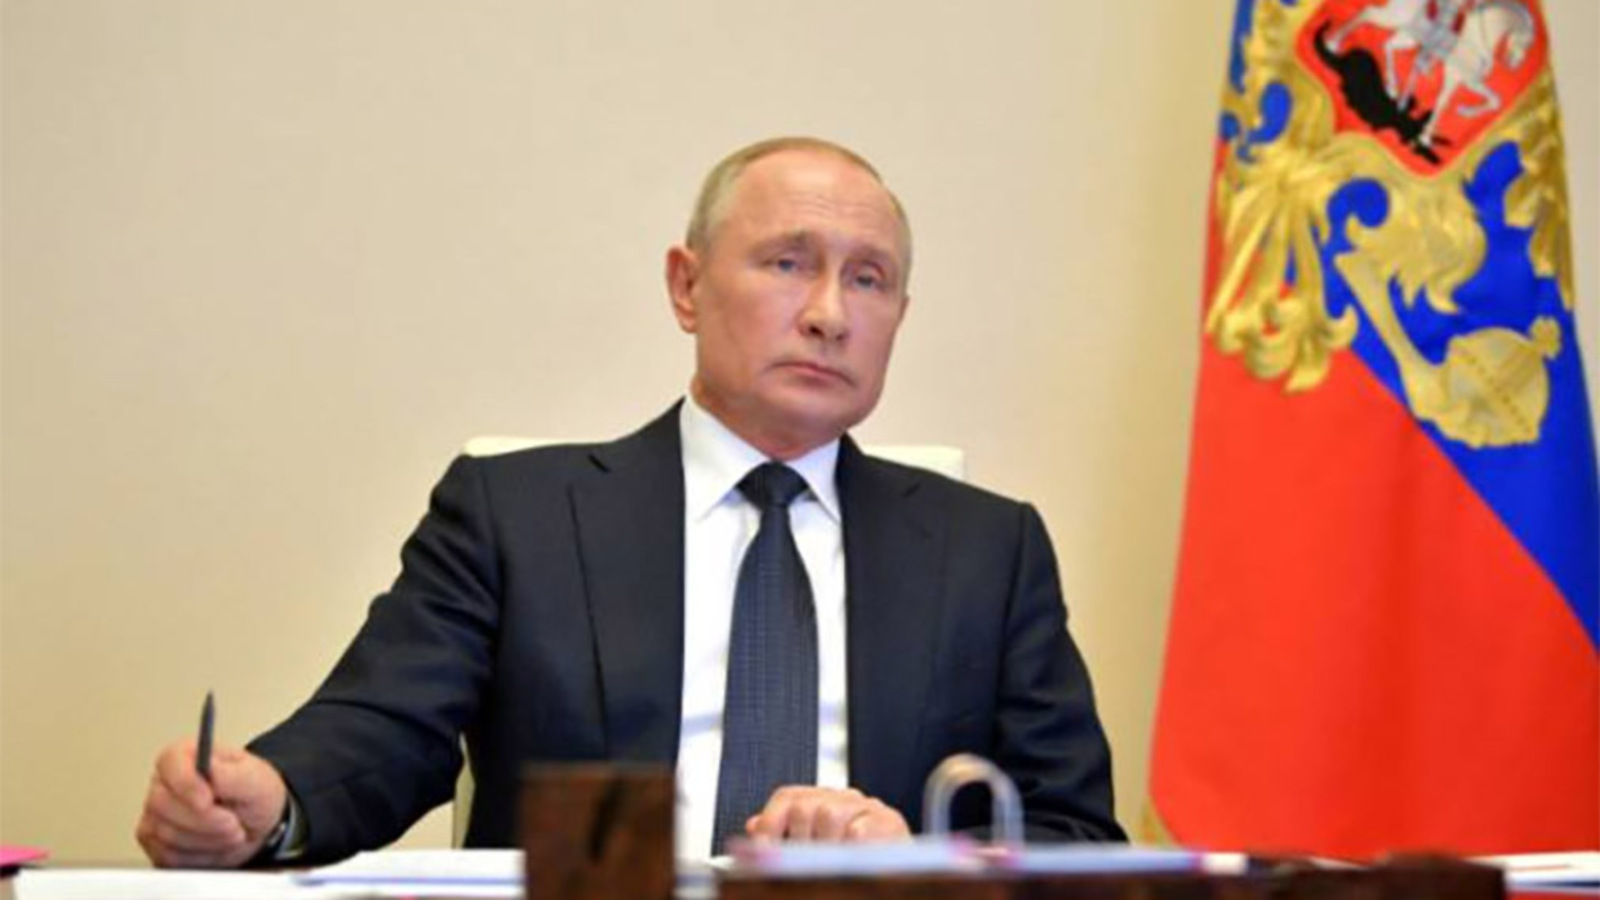 Владимир Путин: В ближайшее время примем решение по увеличению всех социальных выплат, МРОТ и величины прожиточного минимума, увеличим зарплаты бюджетников